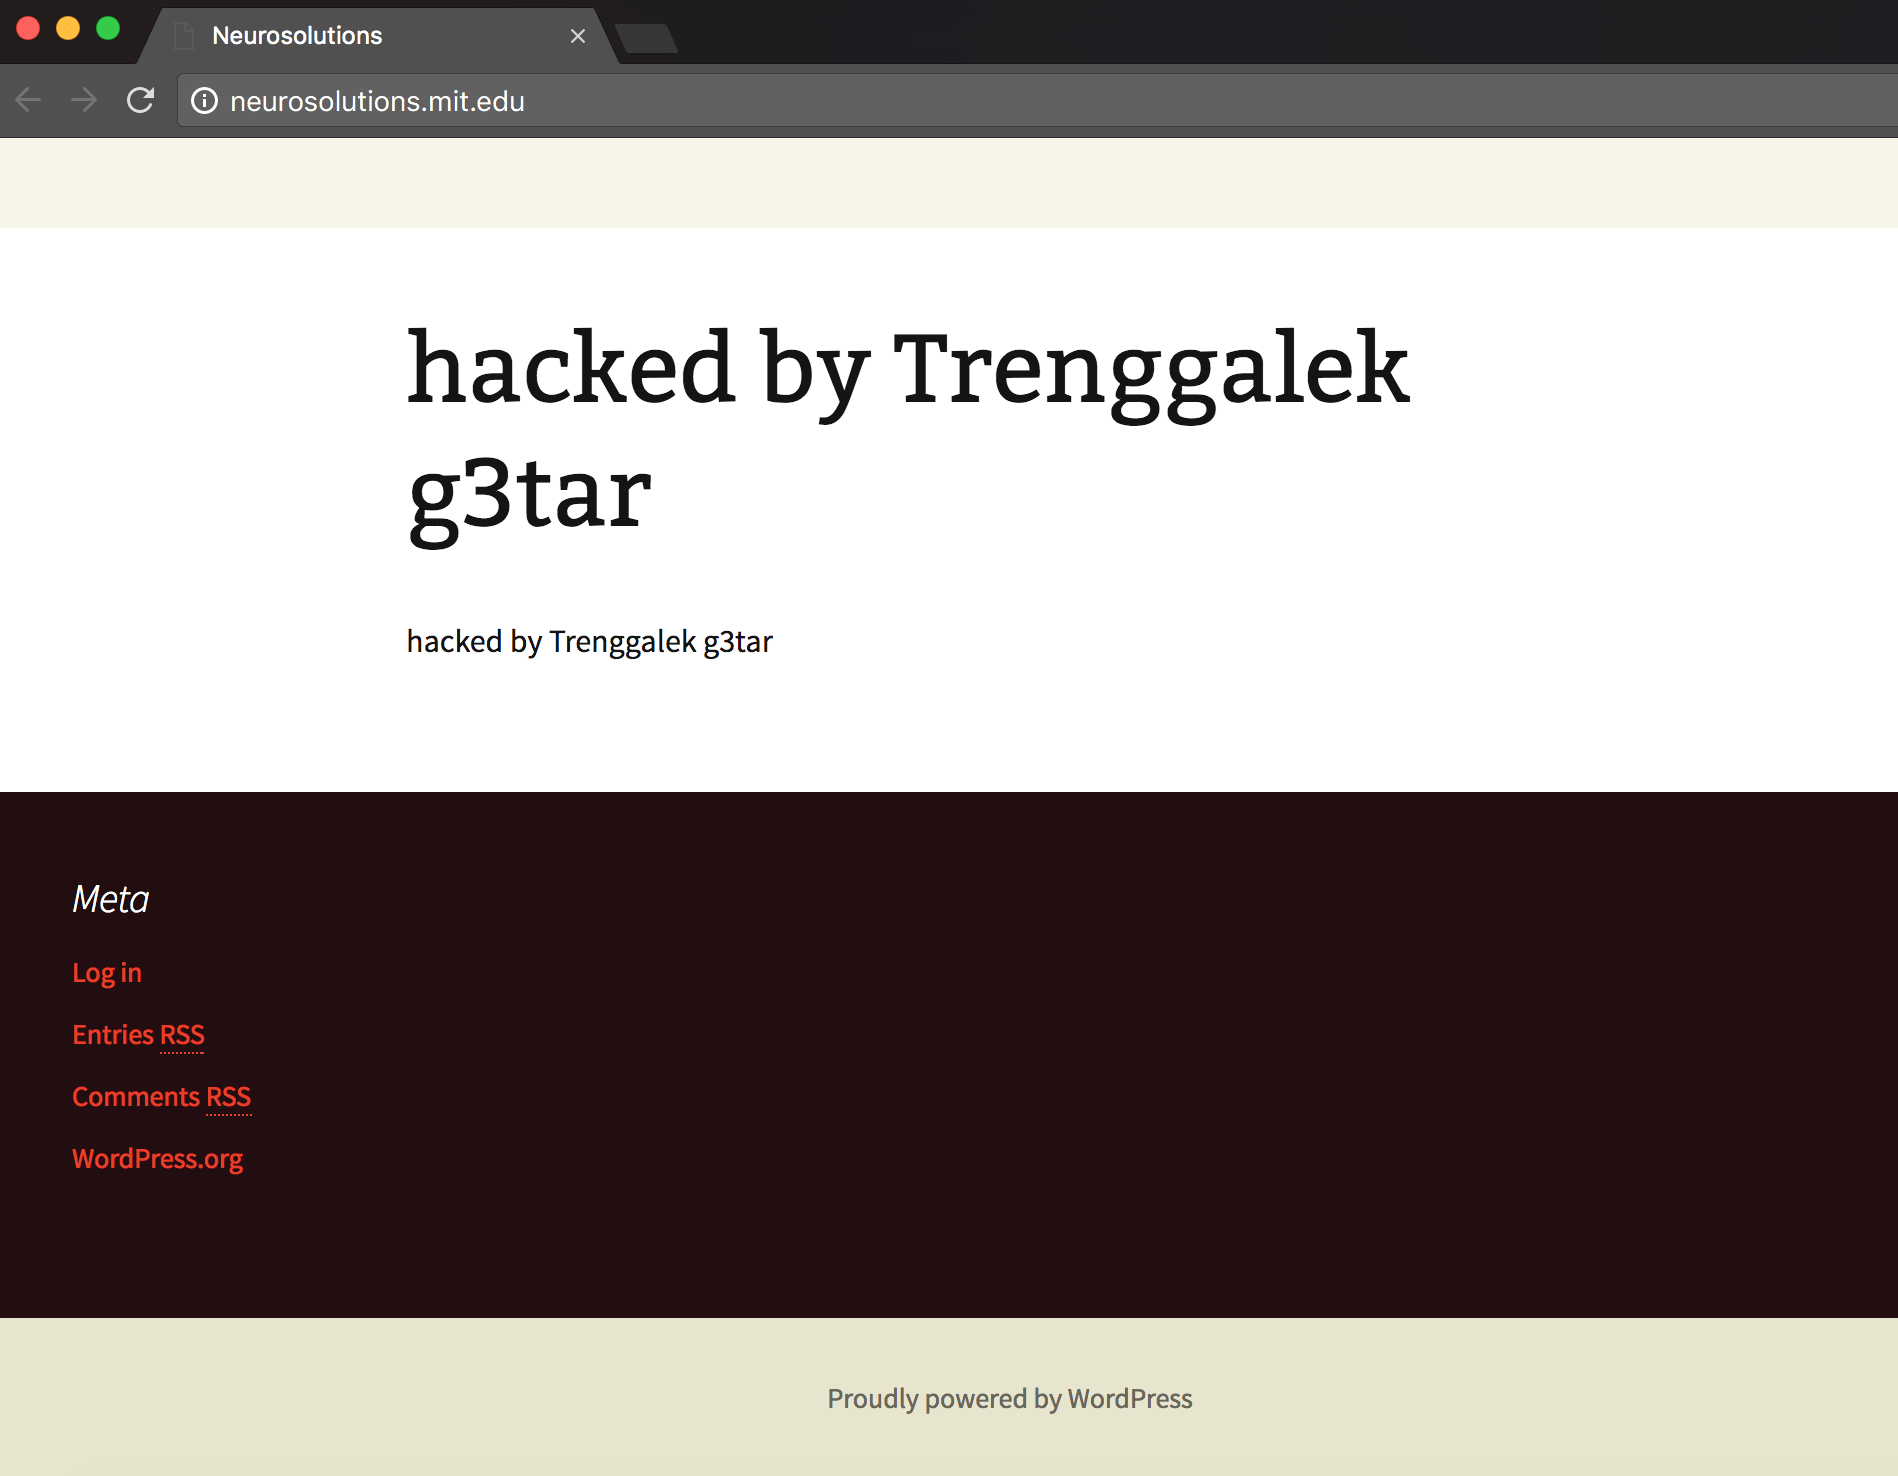 Screenshot of neurosolutions.mit.edu hacked by Trenggalek g3tar